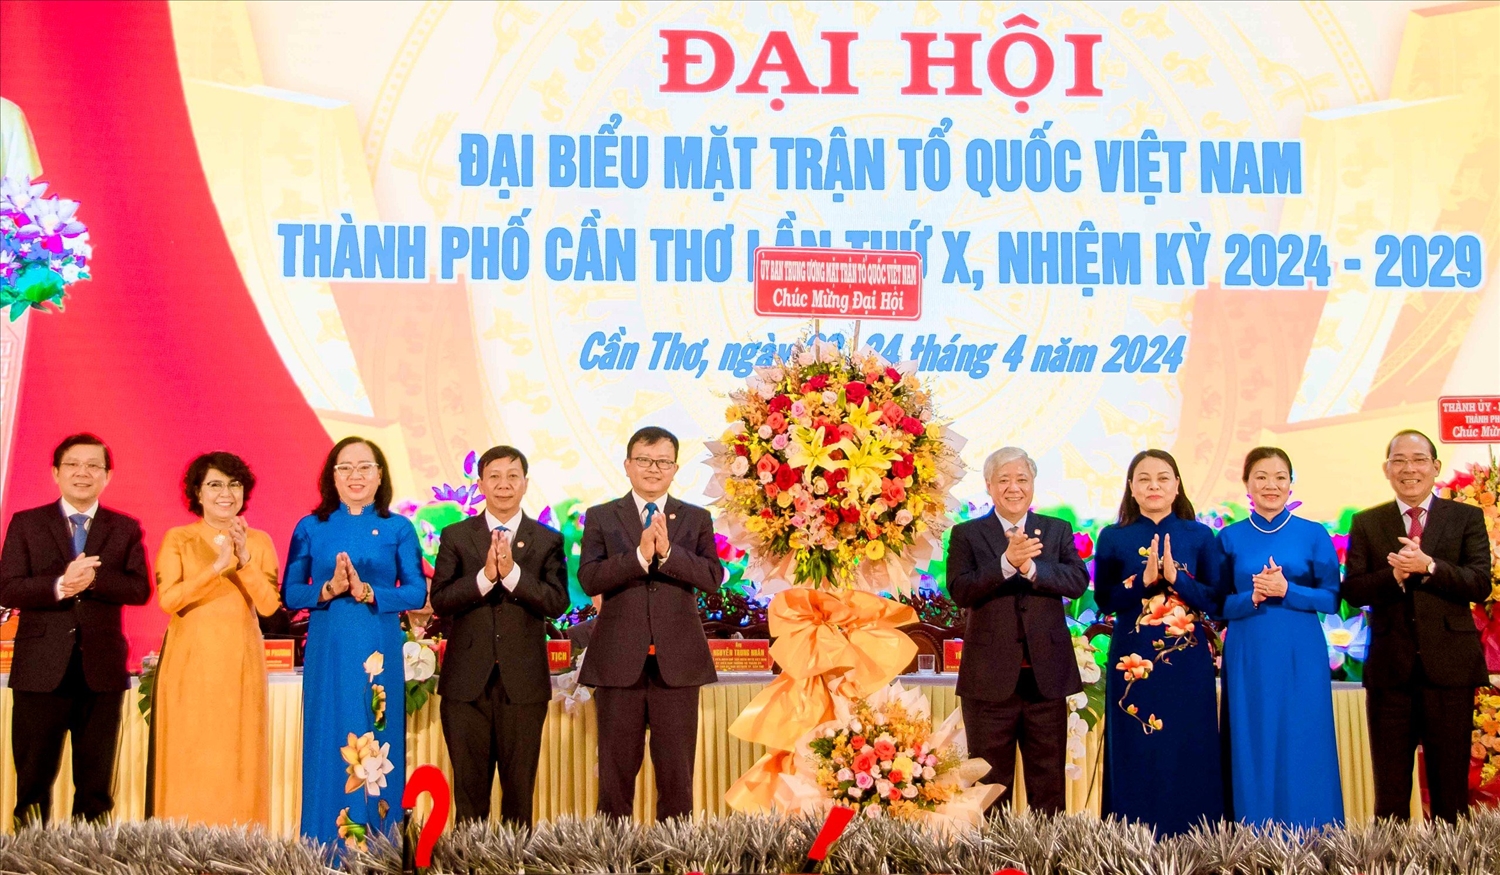 Chủ tịch Ủy ban Trung ương MTTQ Việt Nam Đỗ Văn Chiến và 3 đồng chí Phó Chủ tịch tặng lẵng hoa chúc mừng đến lãnh đạo Uỷ ban MTTQ Việt Nam TP. Cần Thơ